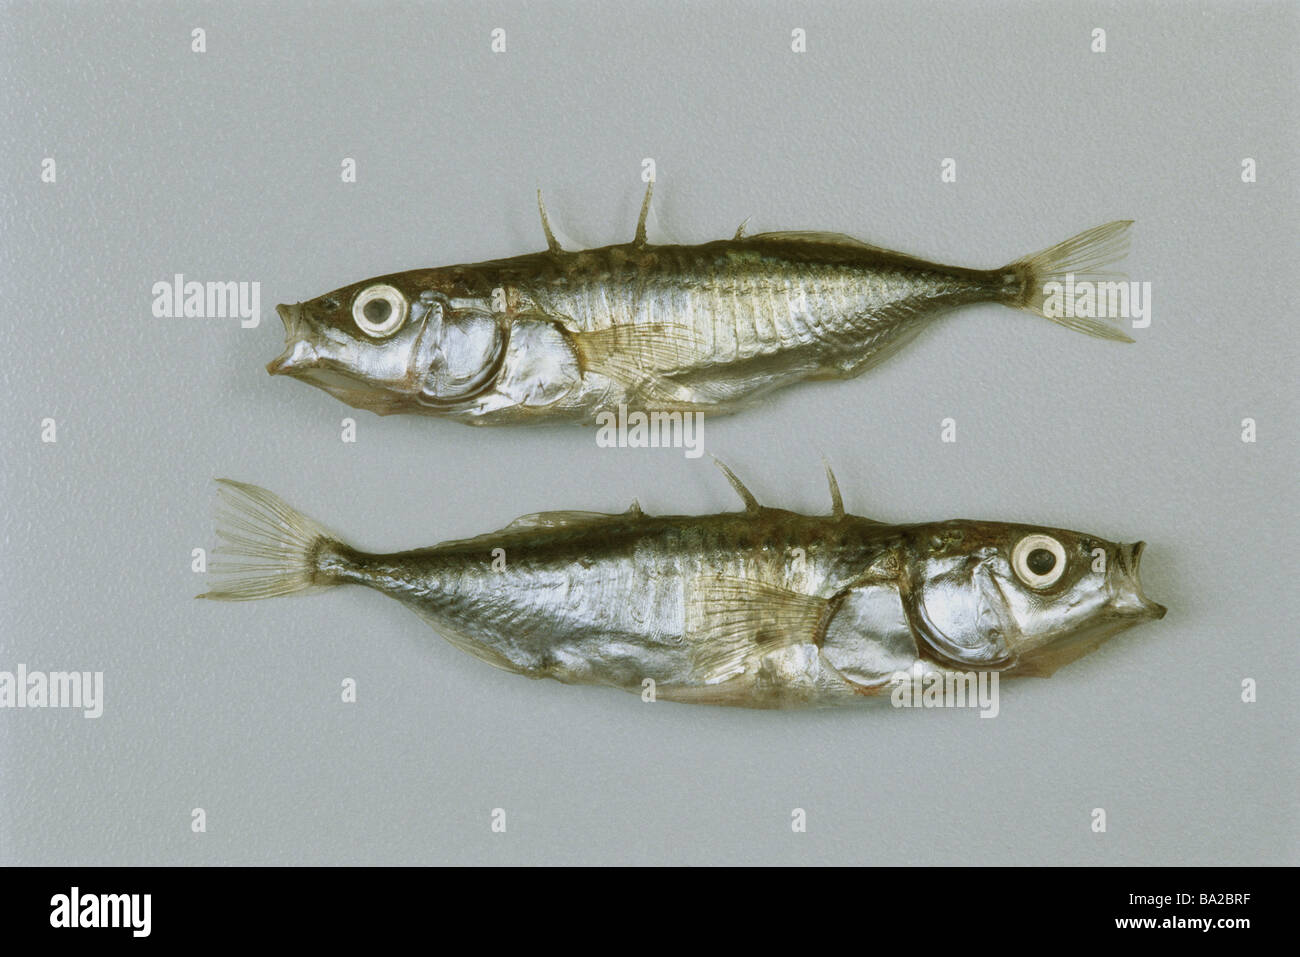 Dreistachlige Stichlinge Gasterosteus Aculeatus zwei tote Tiere Fisch Knochen-Symbol Haul Angeln Angelruten Fischfutter Stockfoto